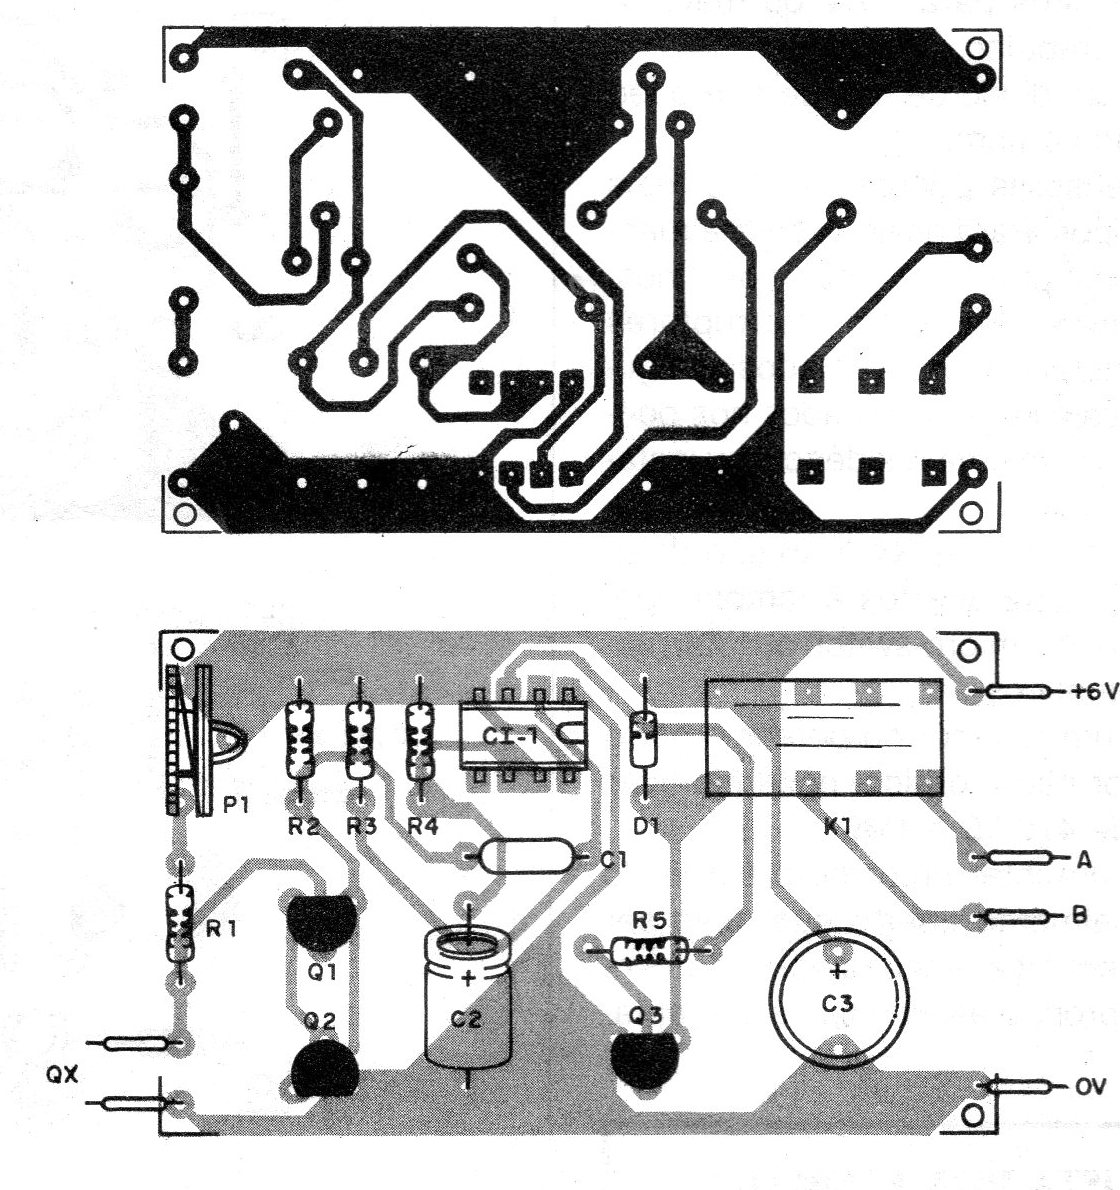    Figura 12 – Placa para a montagem
